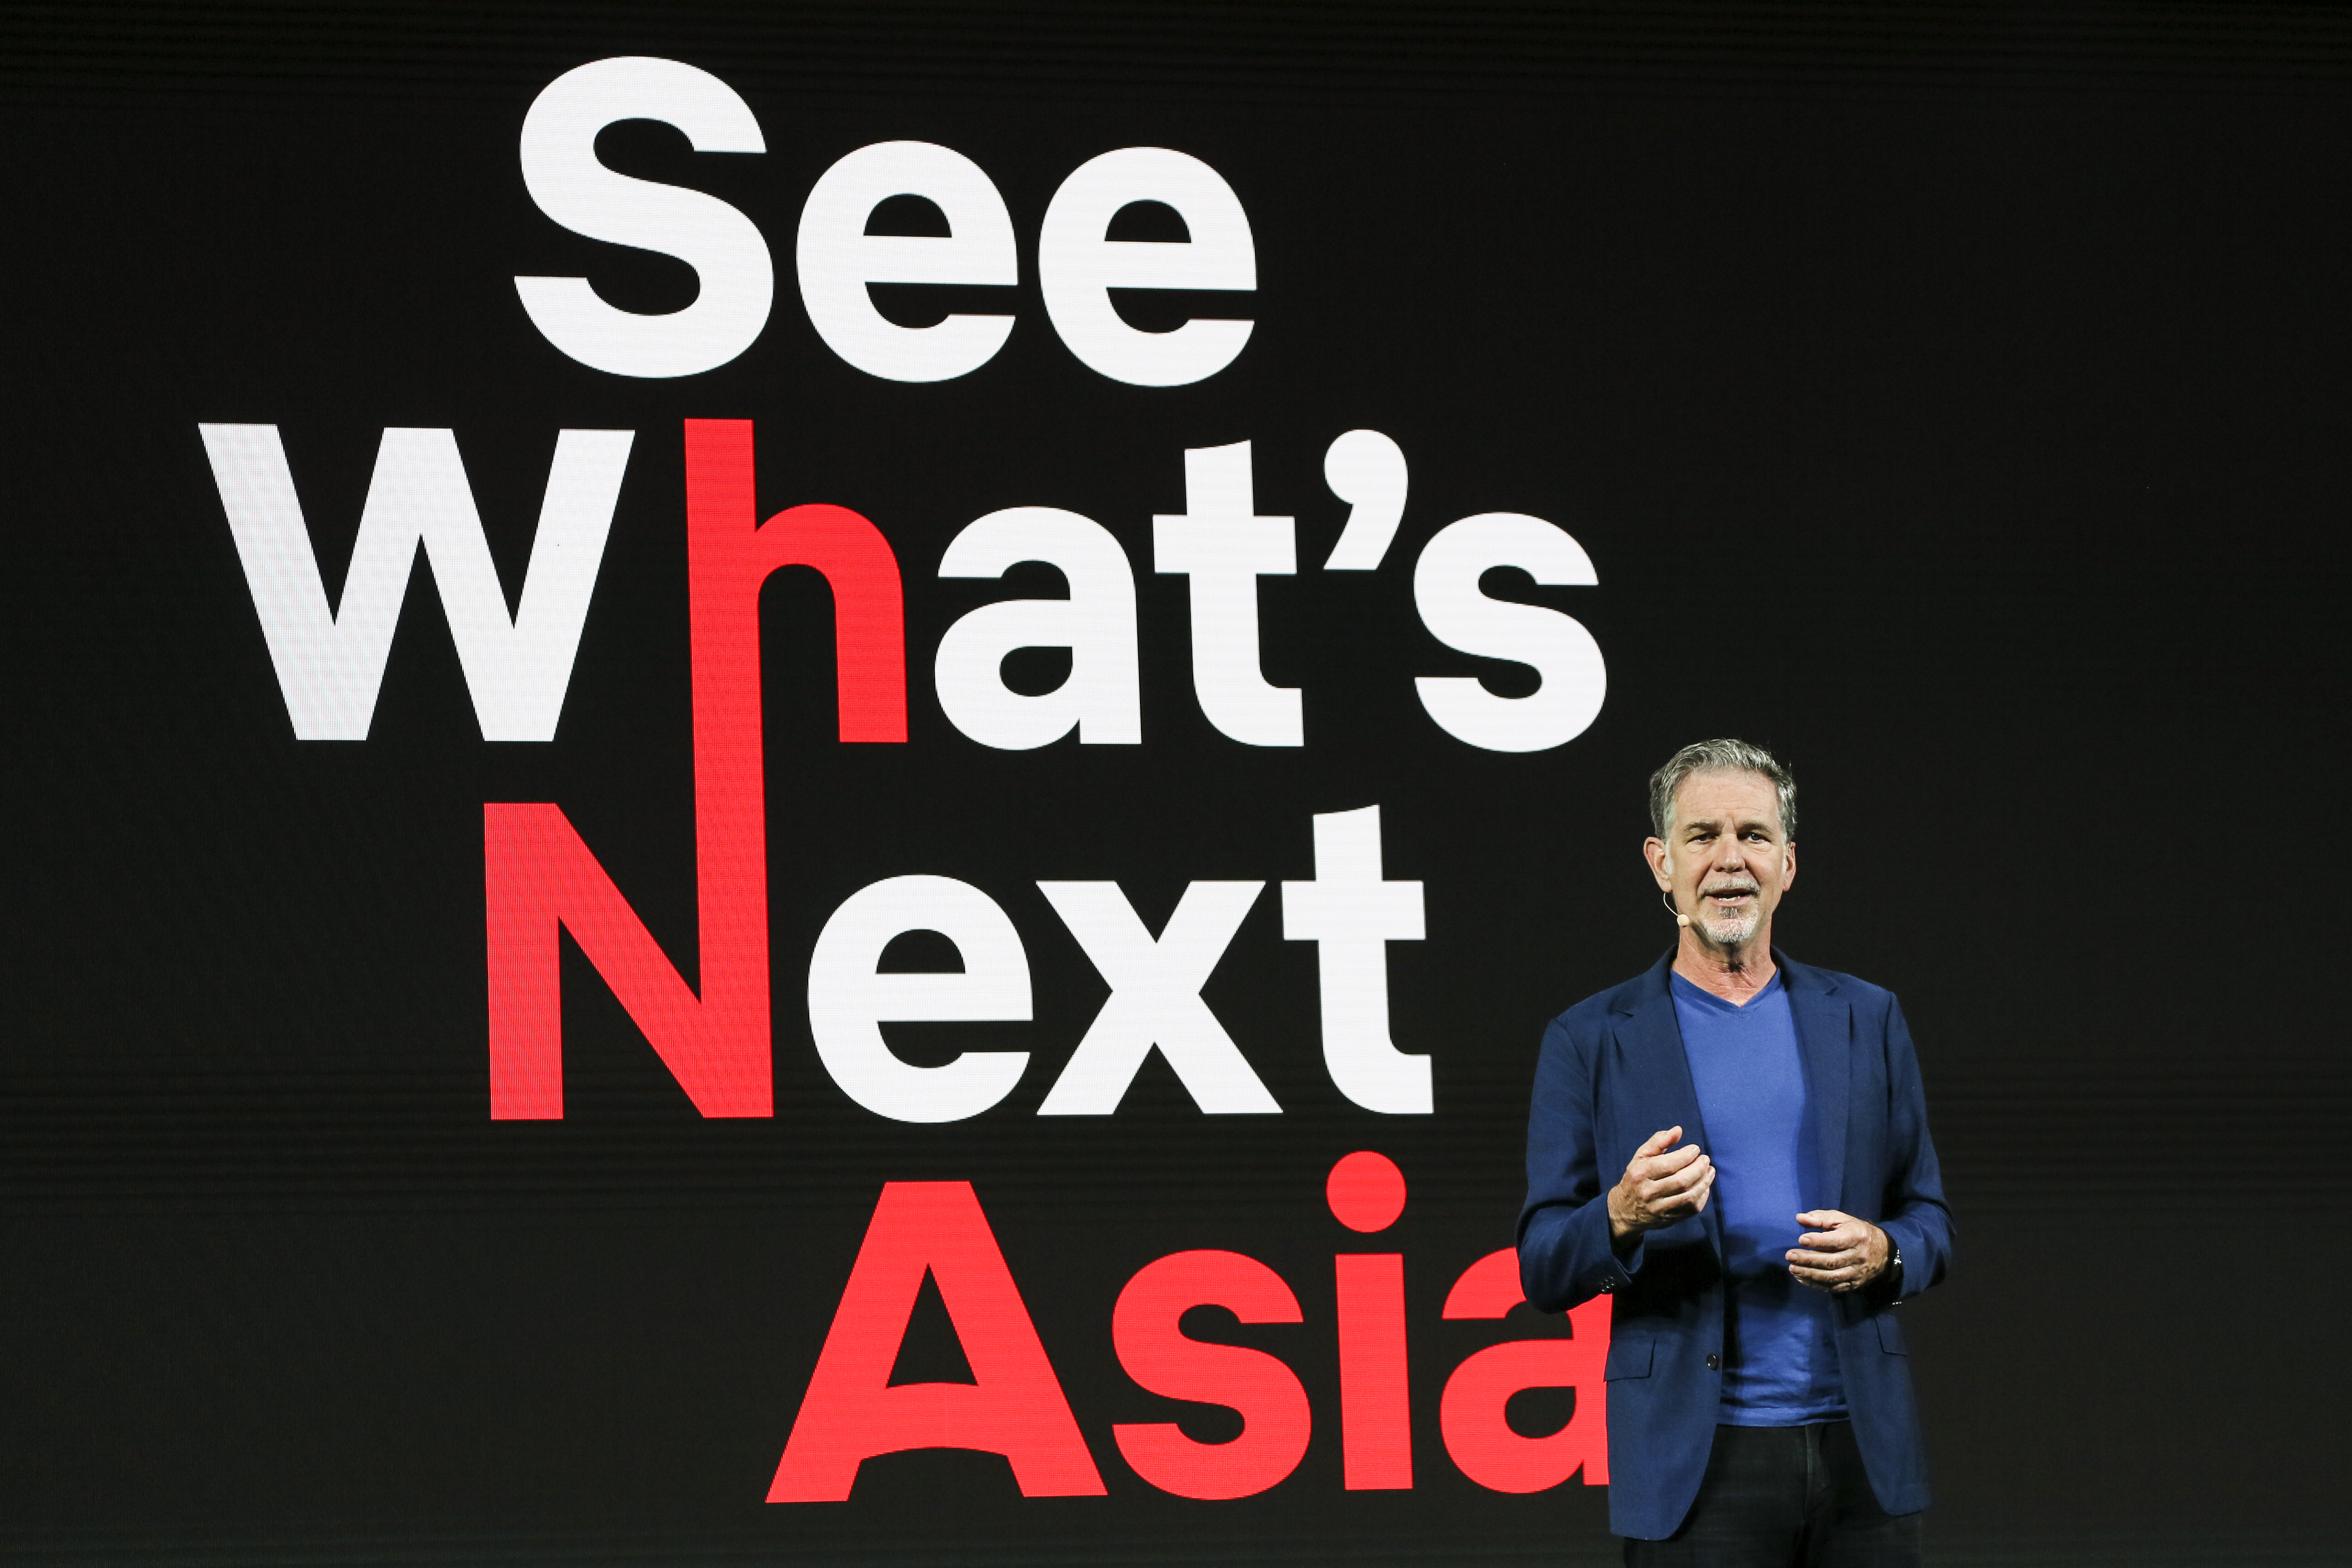 8일 싱가포르에서 열린 아시아 지역 라인업 행사 ‘시 왓츠 넥스트:아시아’에서 기조연설하는 리드 헤이스팅스 CEO  넷플릭스 제공